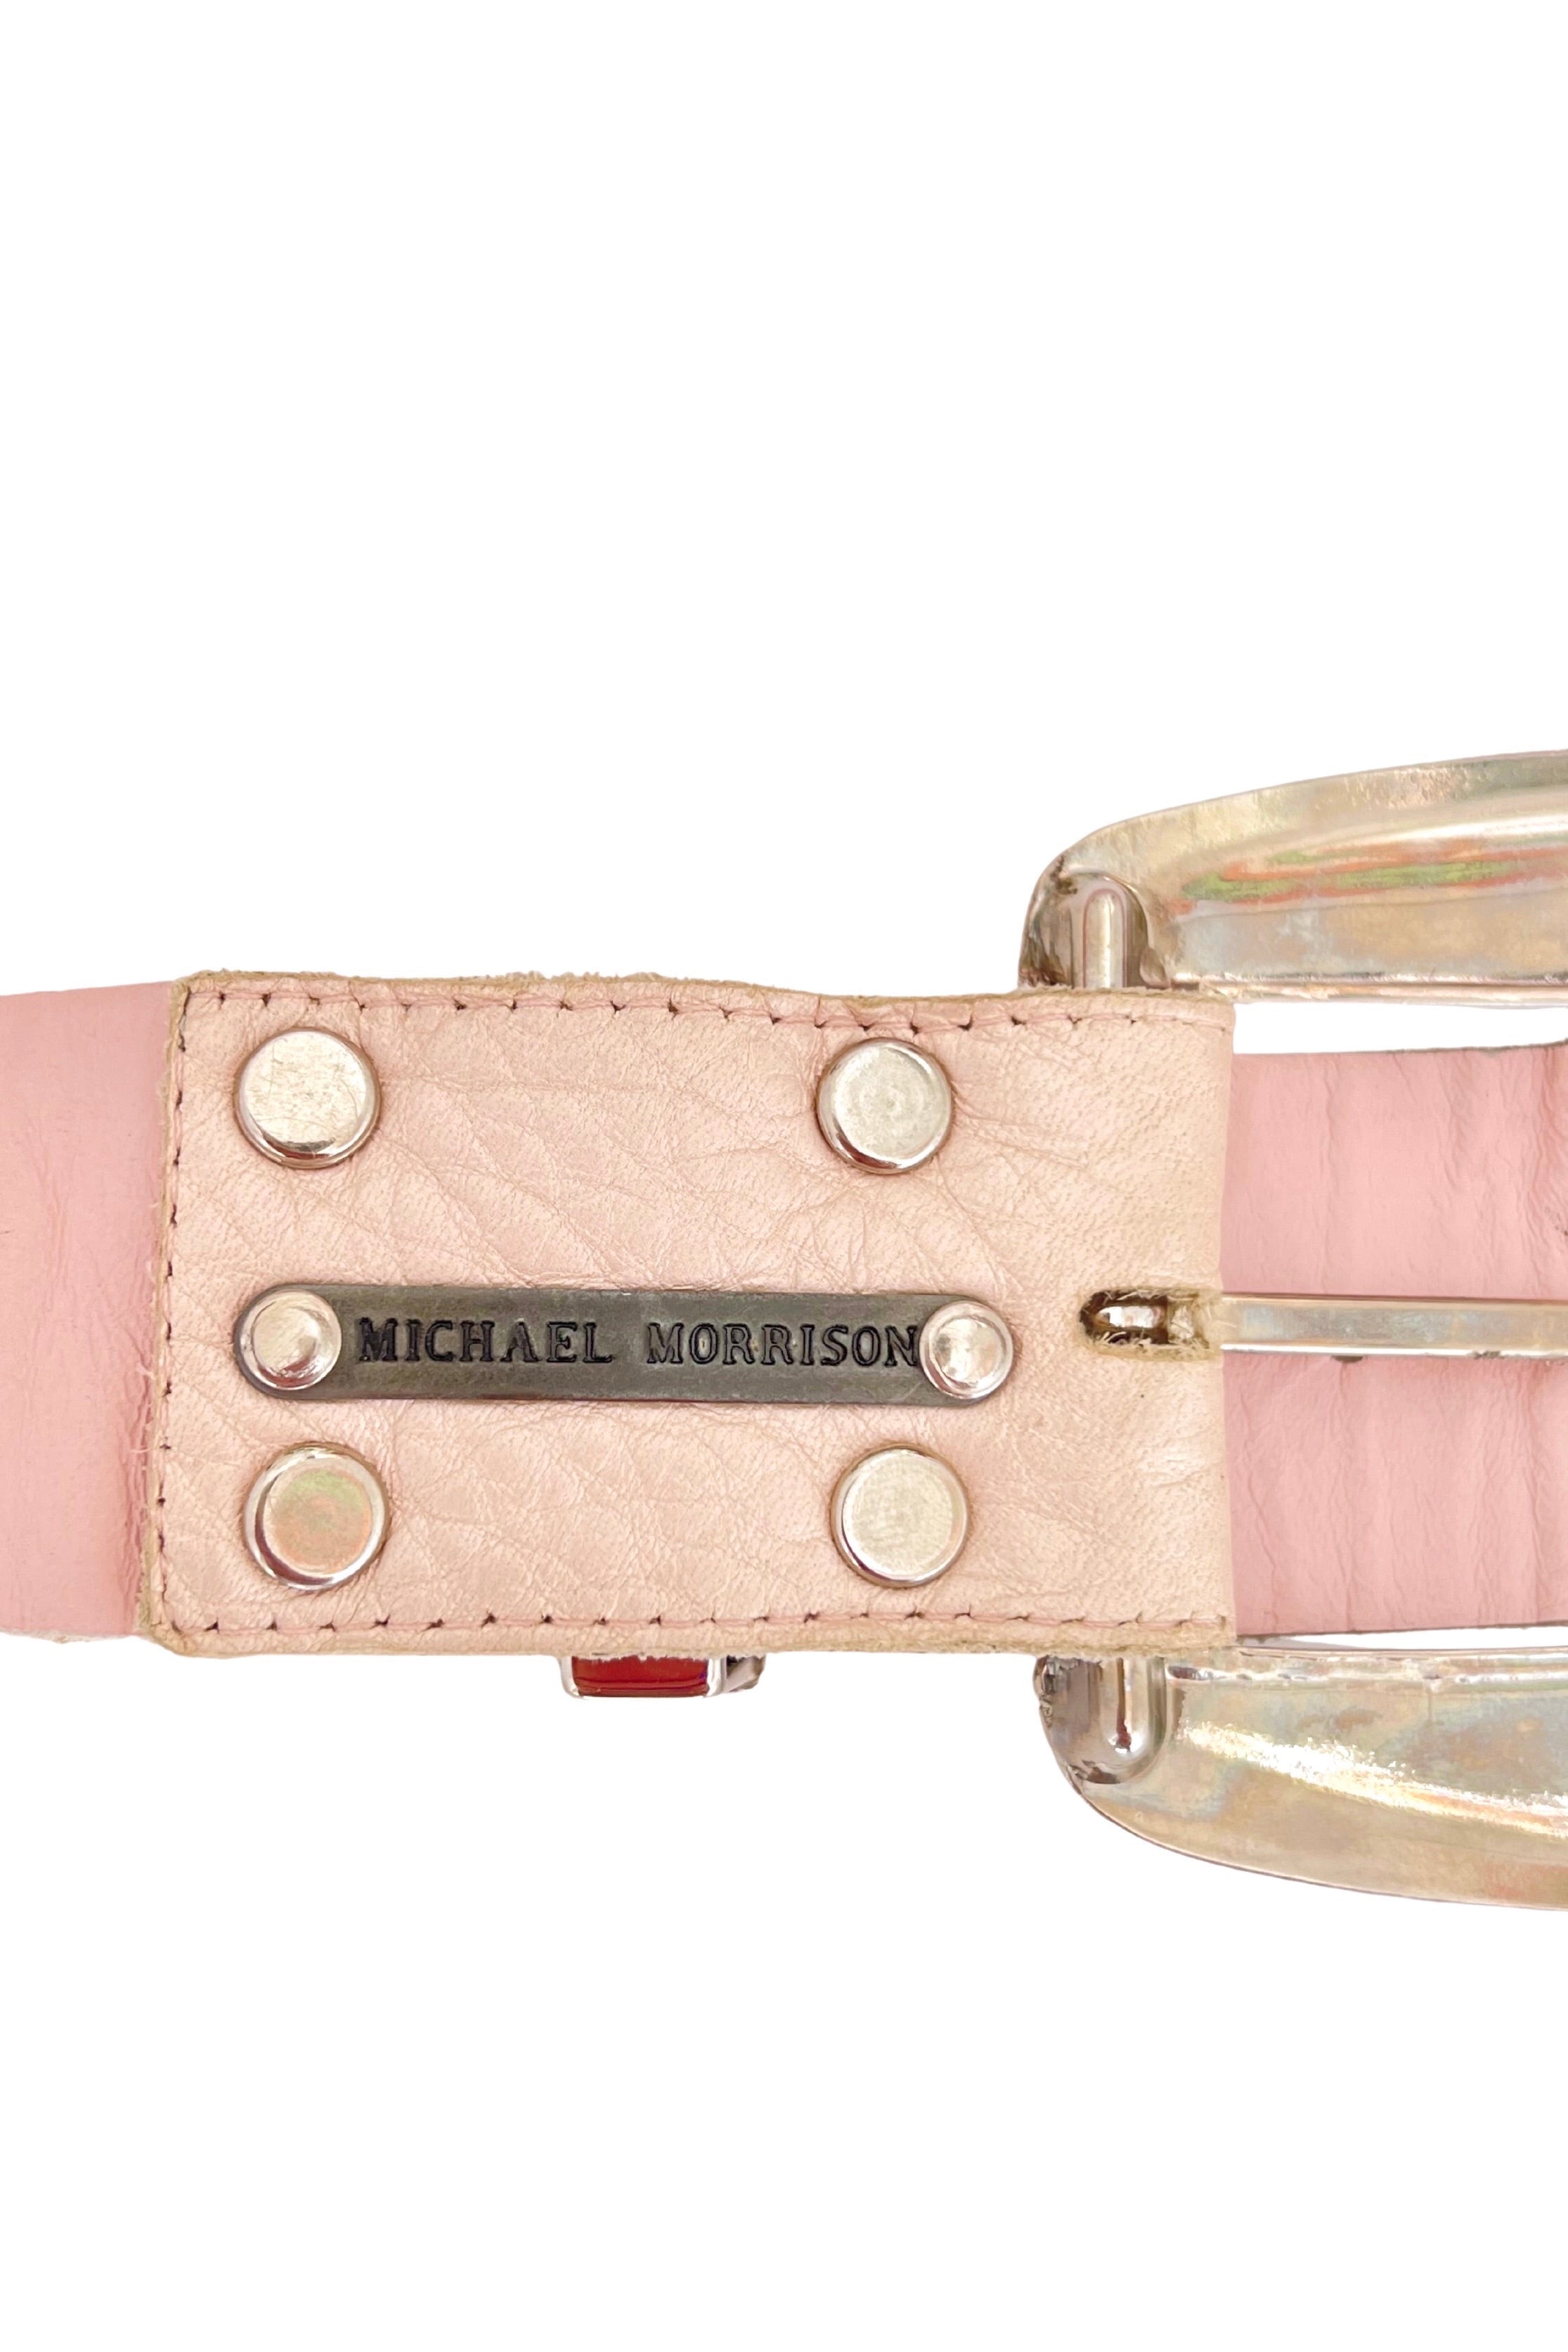 Michael Morrison <br> 80's pink crystal studded buckle leather belt